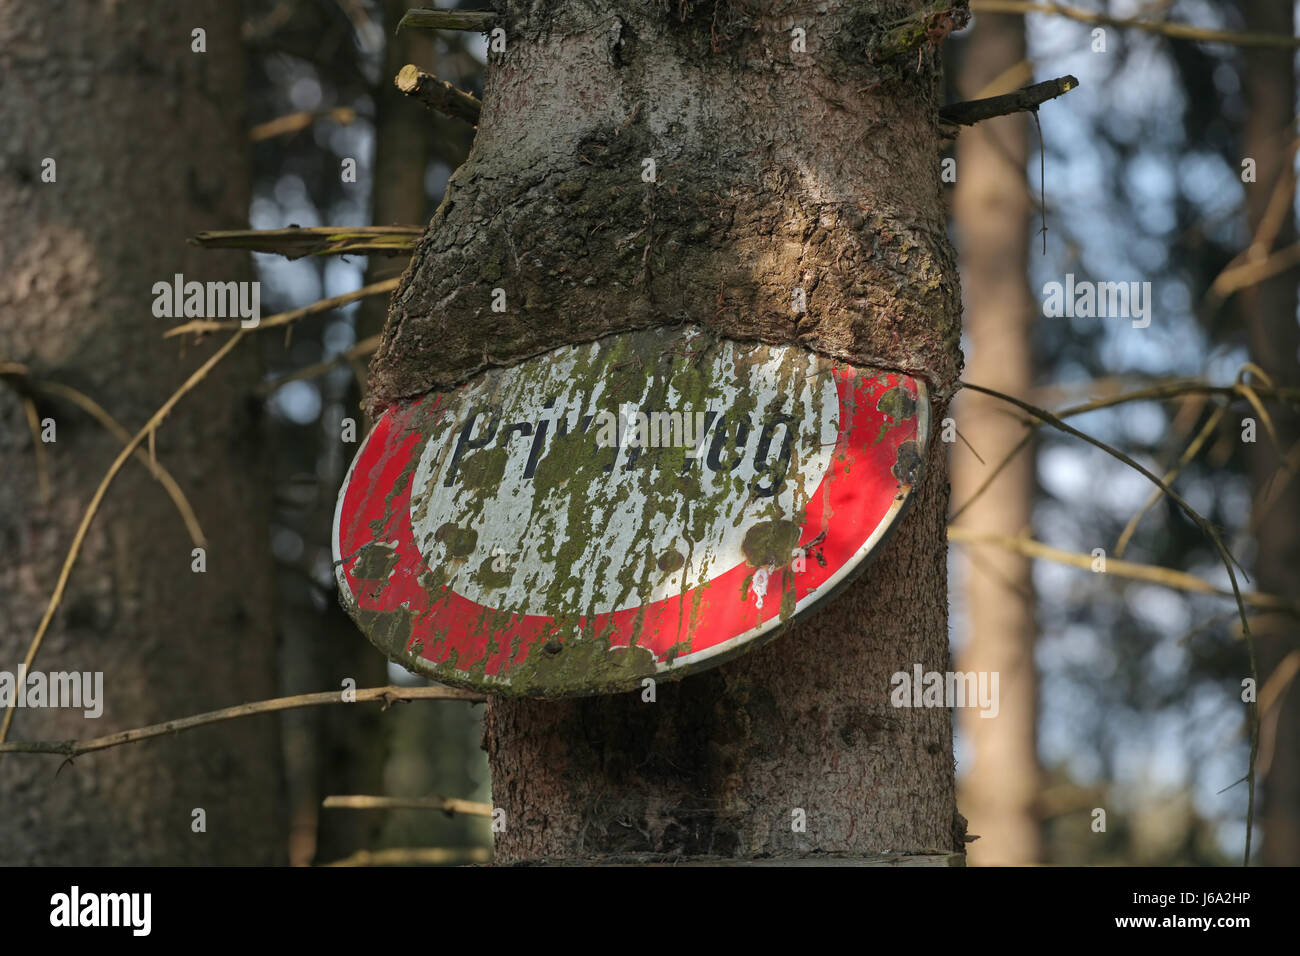 tree eats road sign Stock Photo